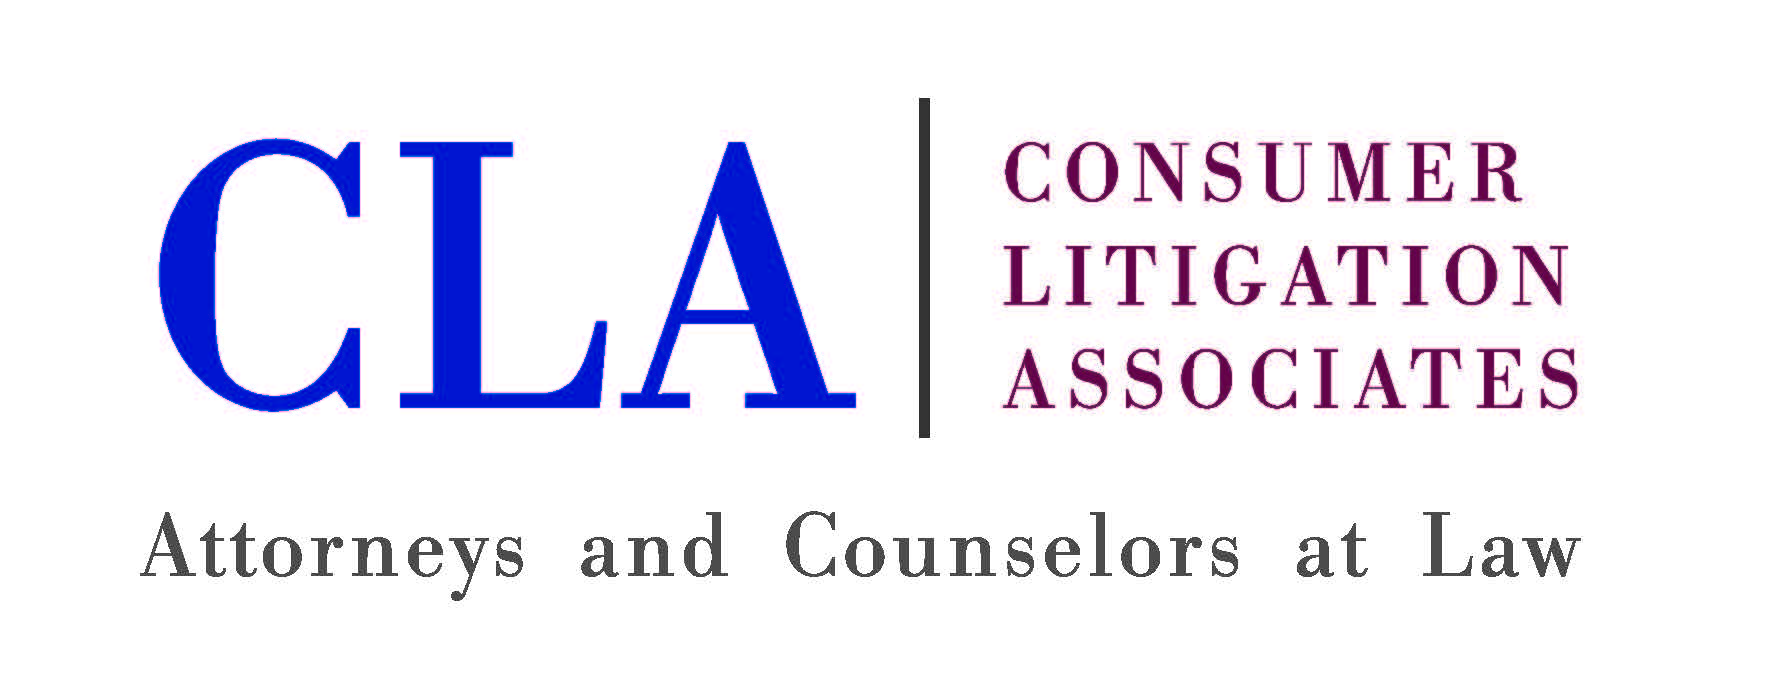 CLA logo